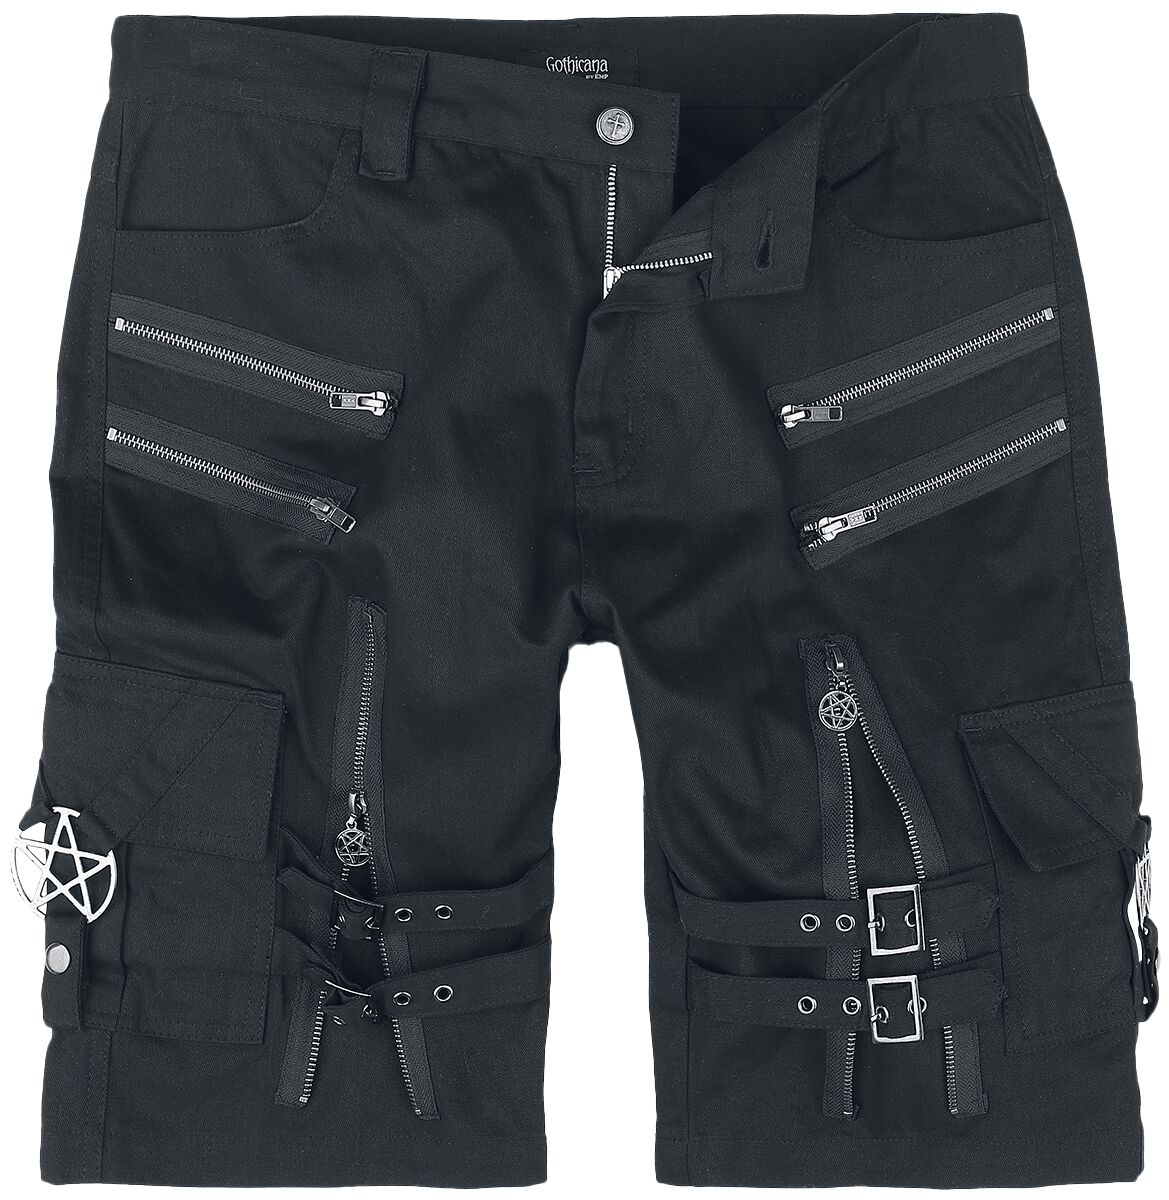 Gothicana by EMP - Gothic Short - Shorts with straps, buckles and zipper - S bis XXL - für Männer - Größe XL - schwarz